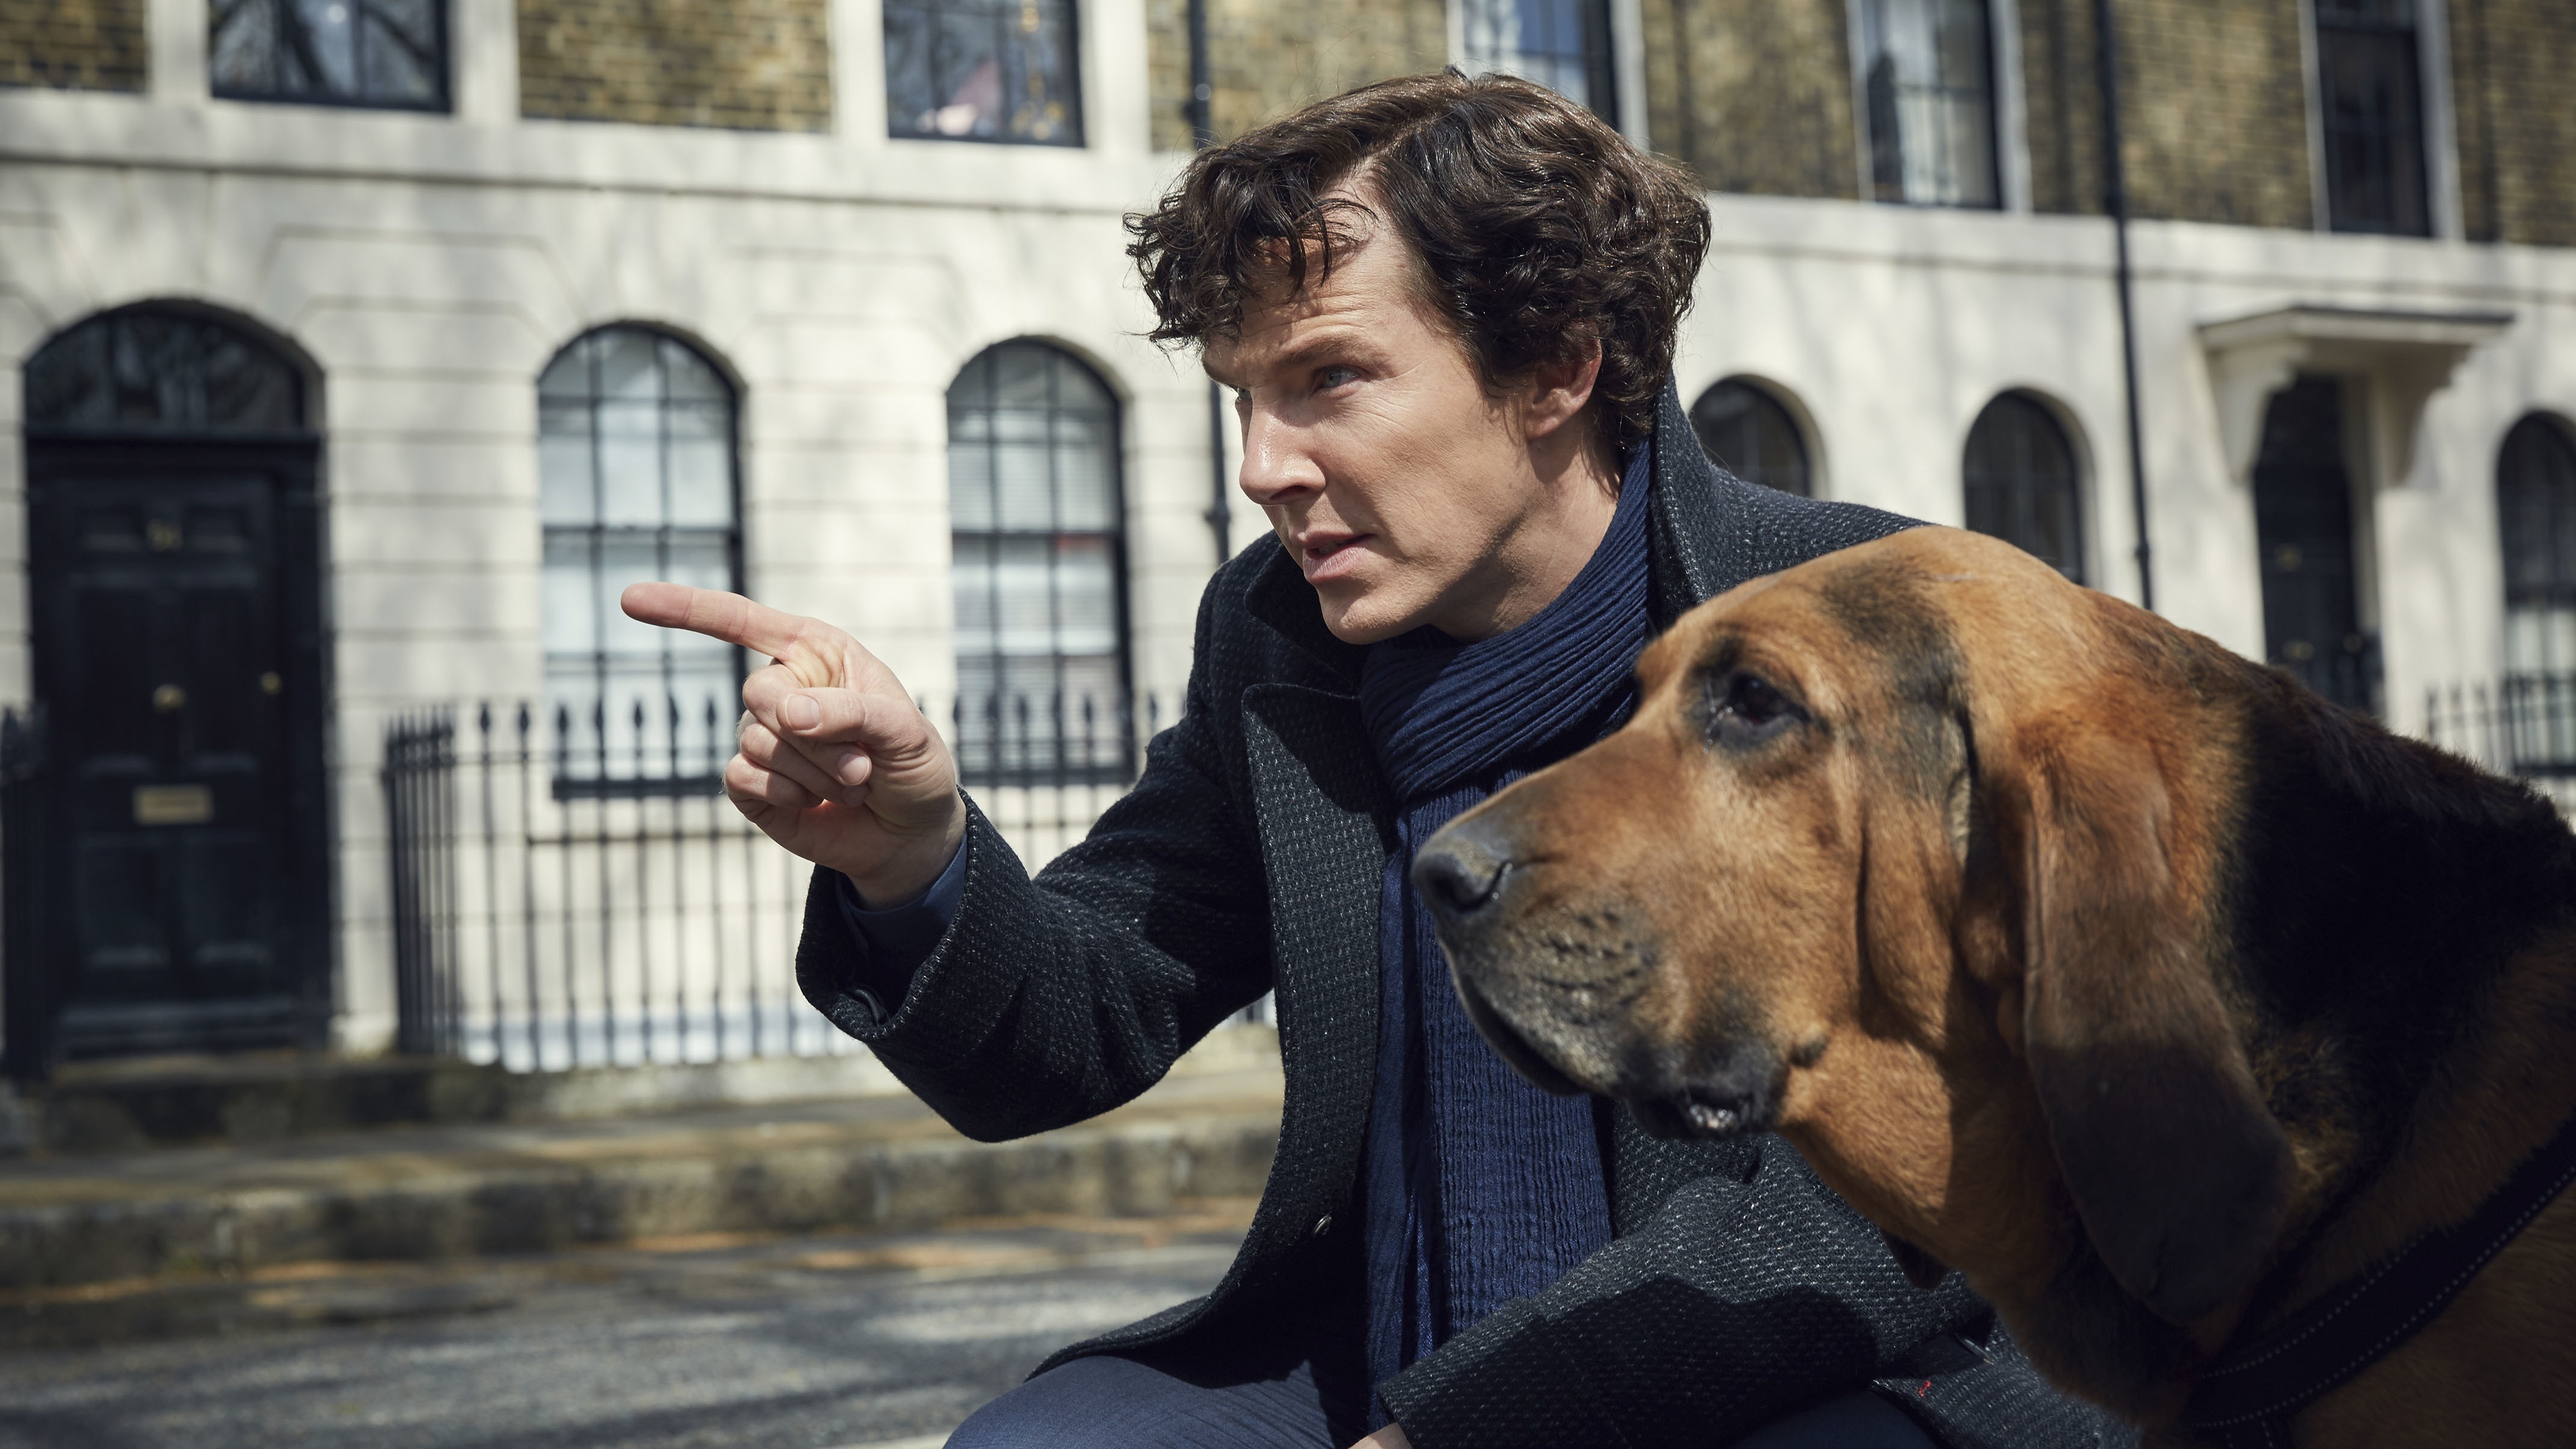 壁紙 3840x2160 イヌ 男性 ベネディクト カンバーバッチ Sherlock Season 4 映画 有名人 ダウンロード 写真